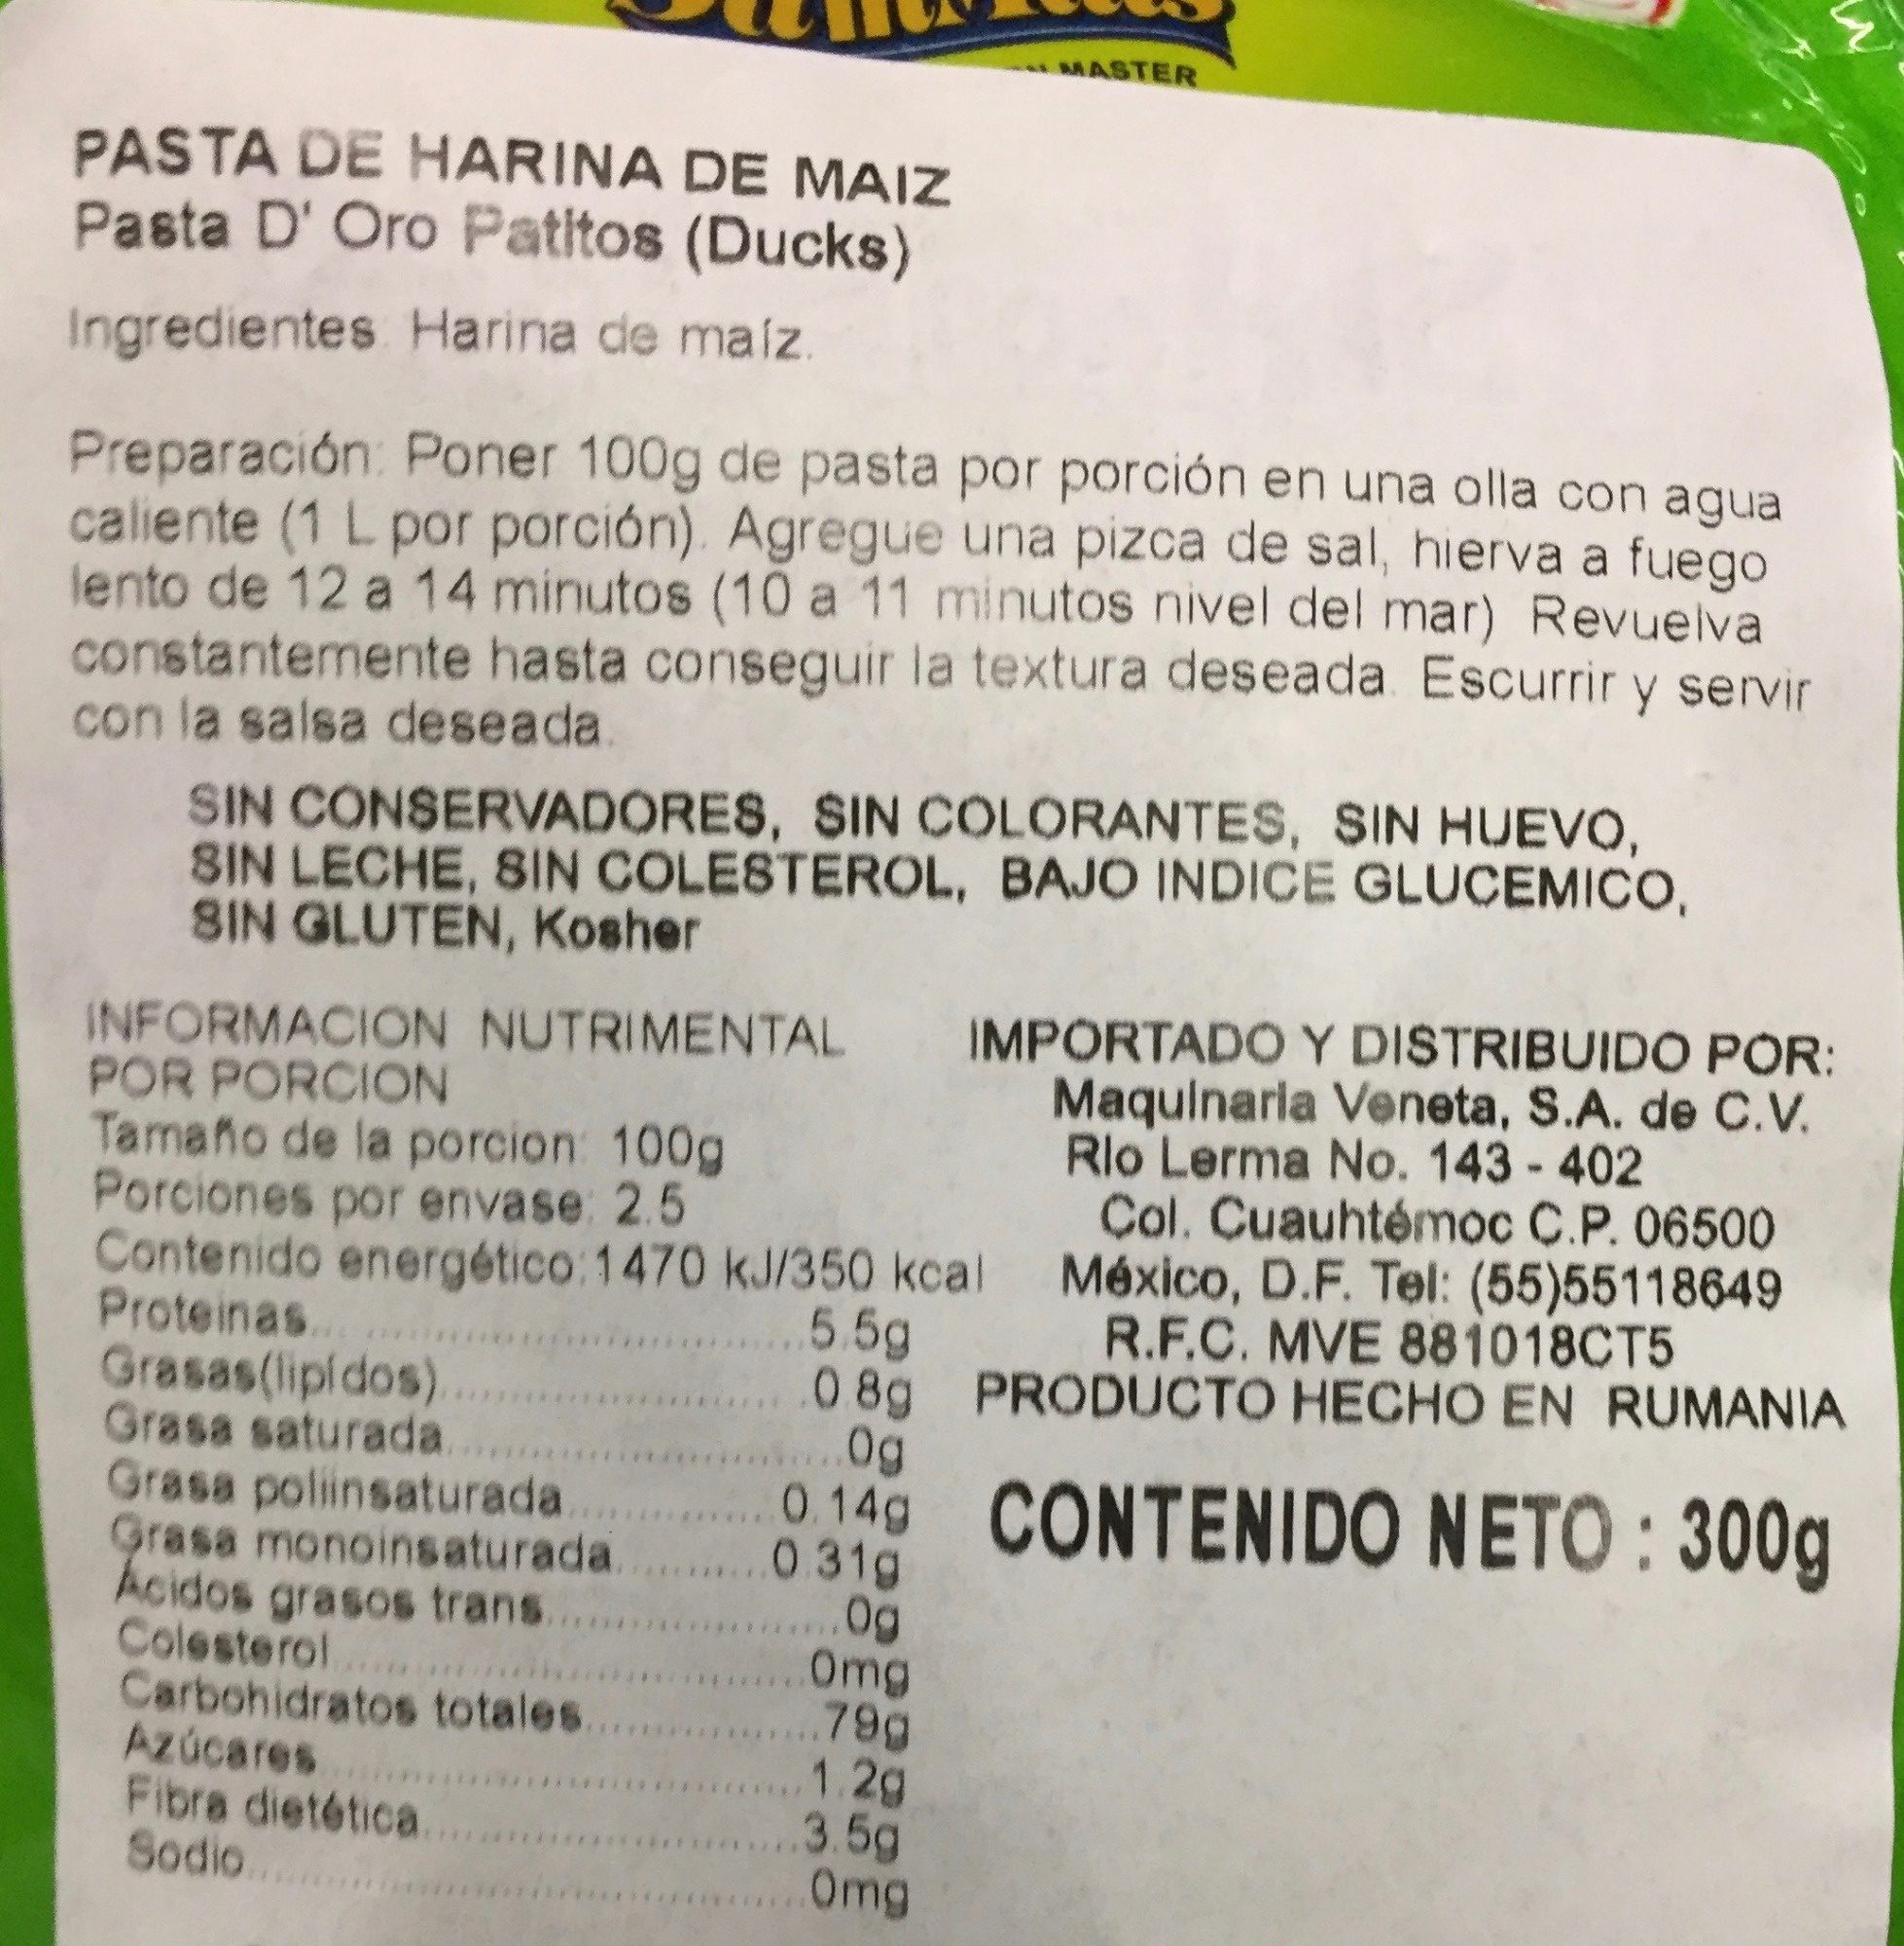 Pasta for kids gluten free ducks - Ingredients - es